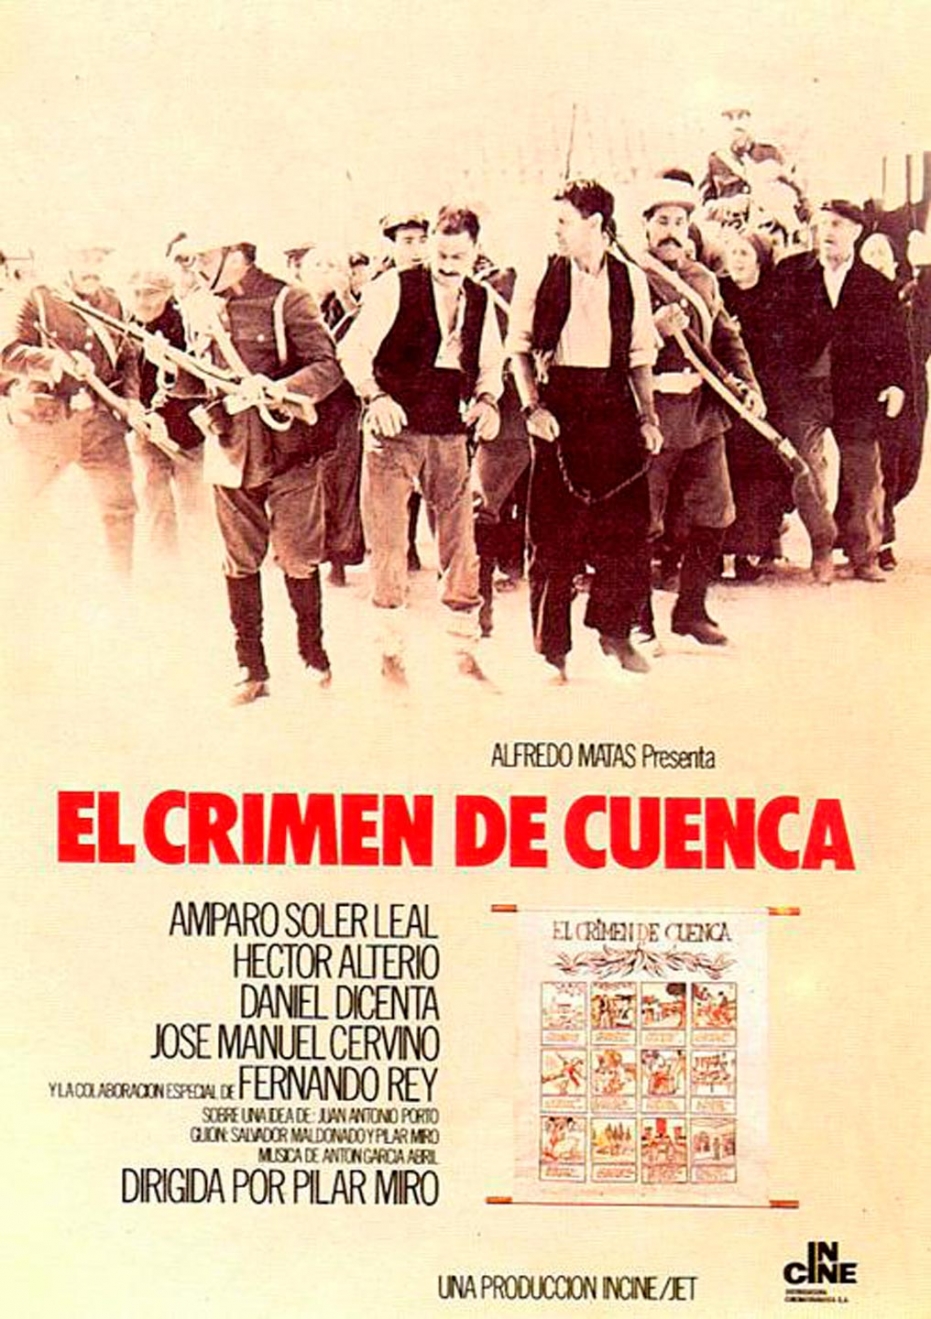 Homenaje a la figura y obra de Pilar Miró: proyección de 'El crimen de Cuenca' en colaboración con Filmoteca Española. Coloquio posterior